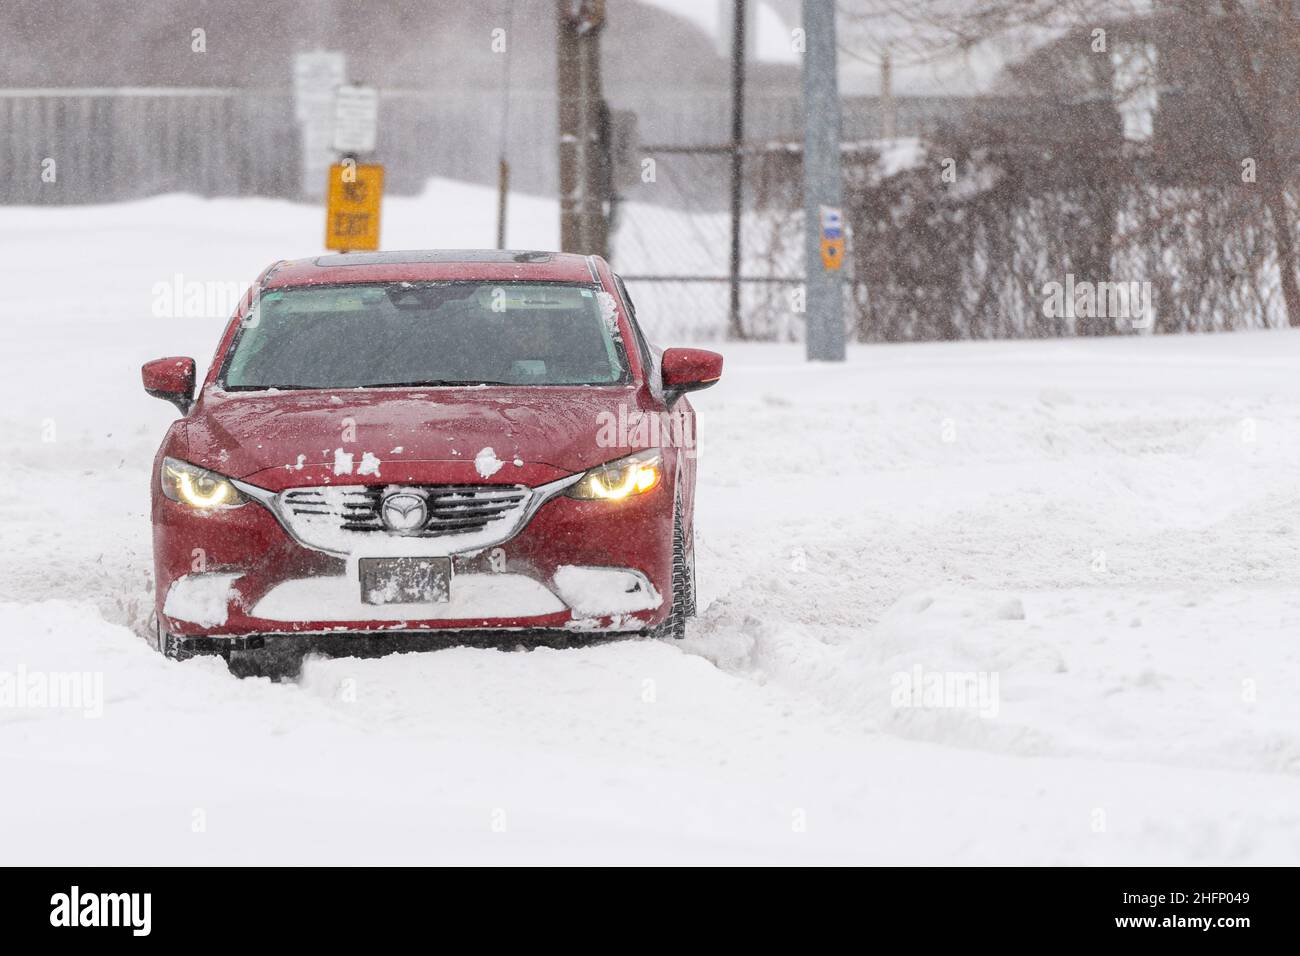 Une voiture Mazda rouge tourne de l'avenue Victoria Park déneigée vers le boulevard Terraview non déneigé lors d'une tempête de neige hivernale à Toronto, Canada Banque D'Images